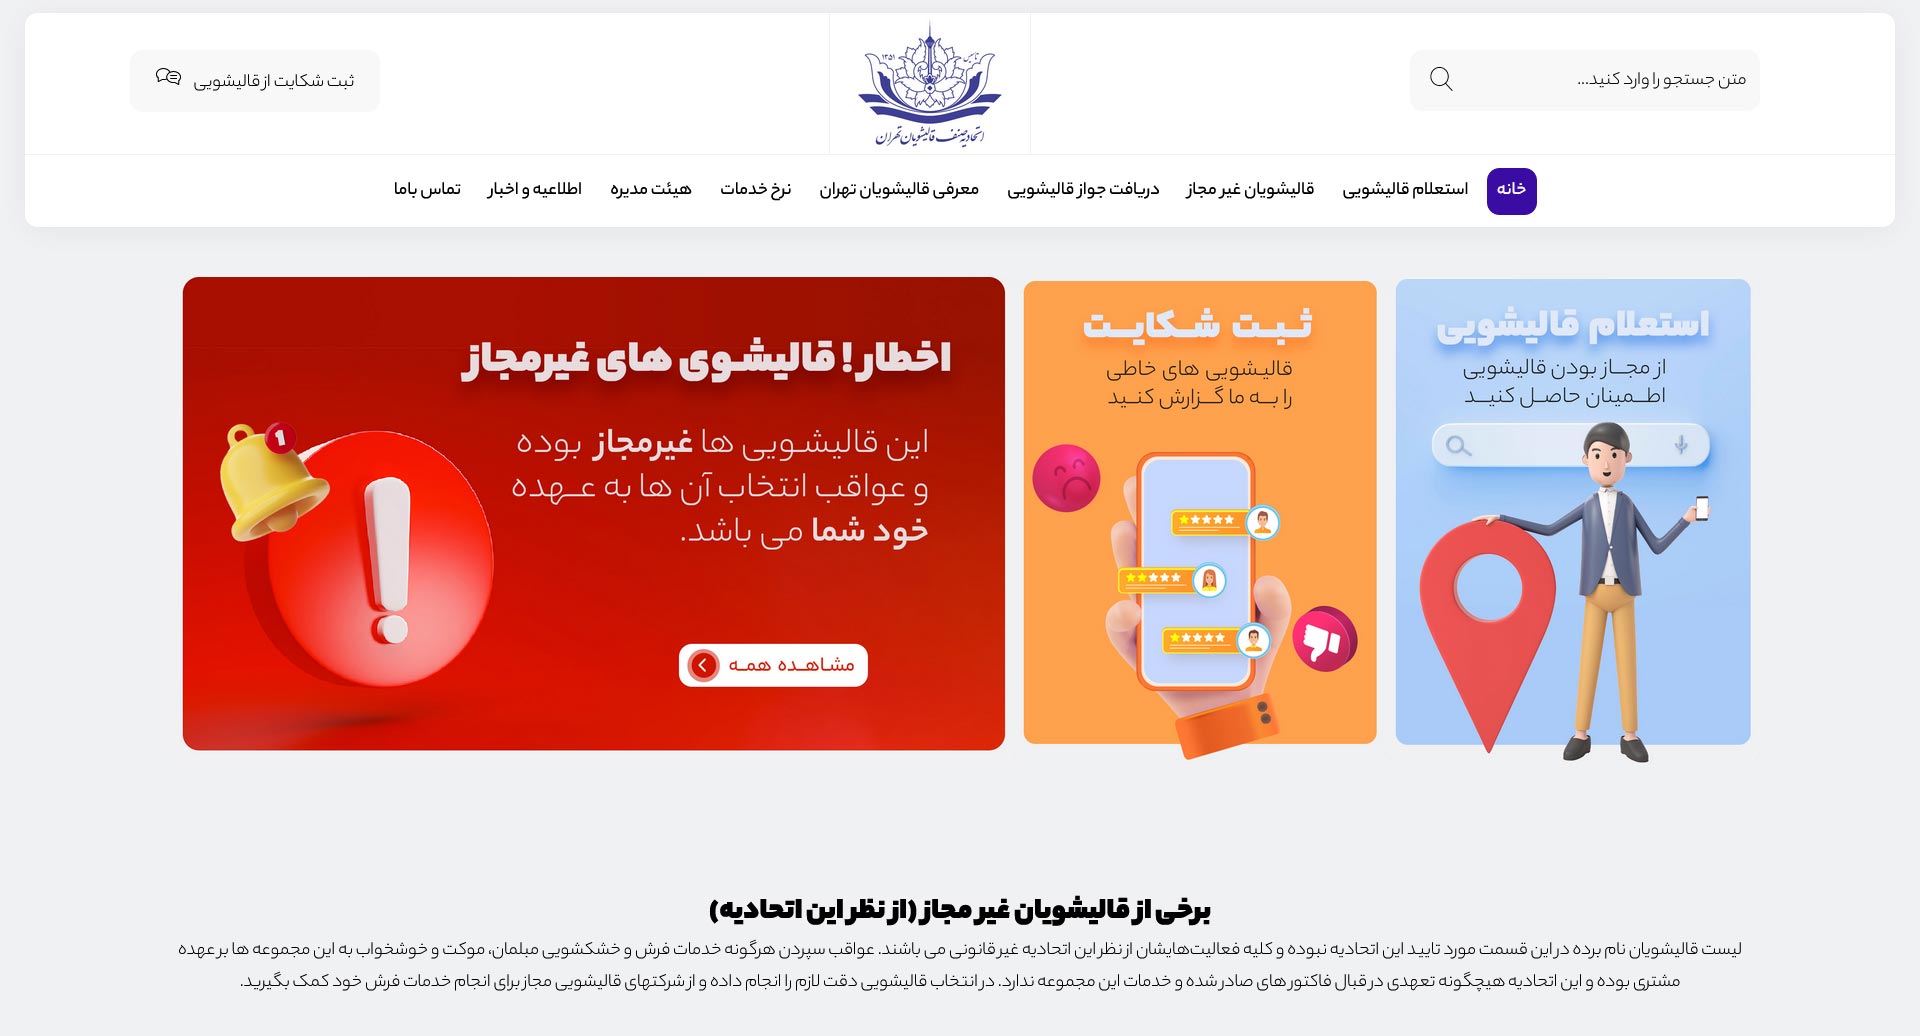 طراحی سایت اتحادیه صنف قالیشویان تهران